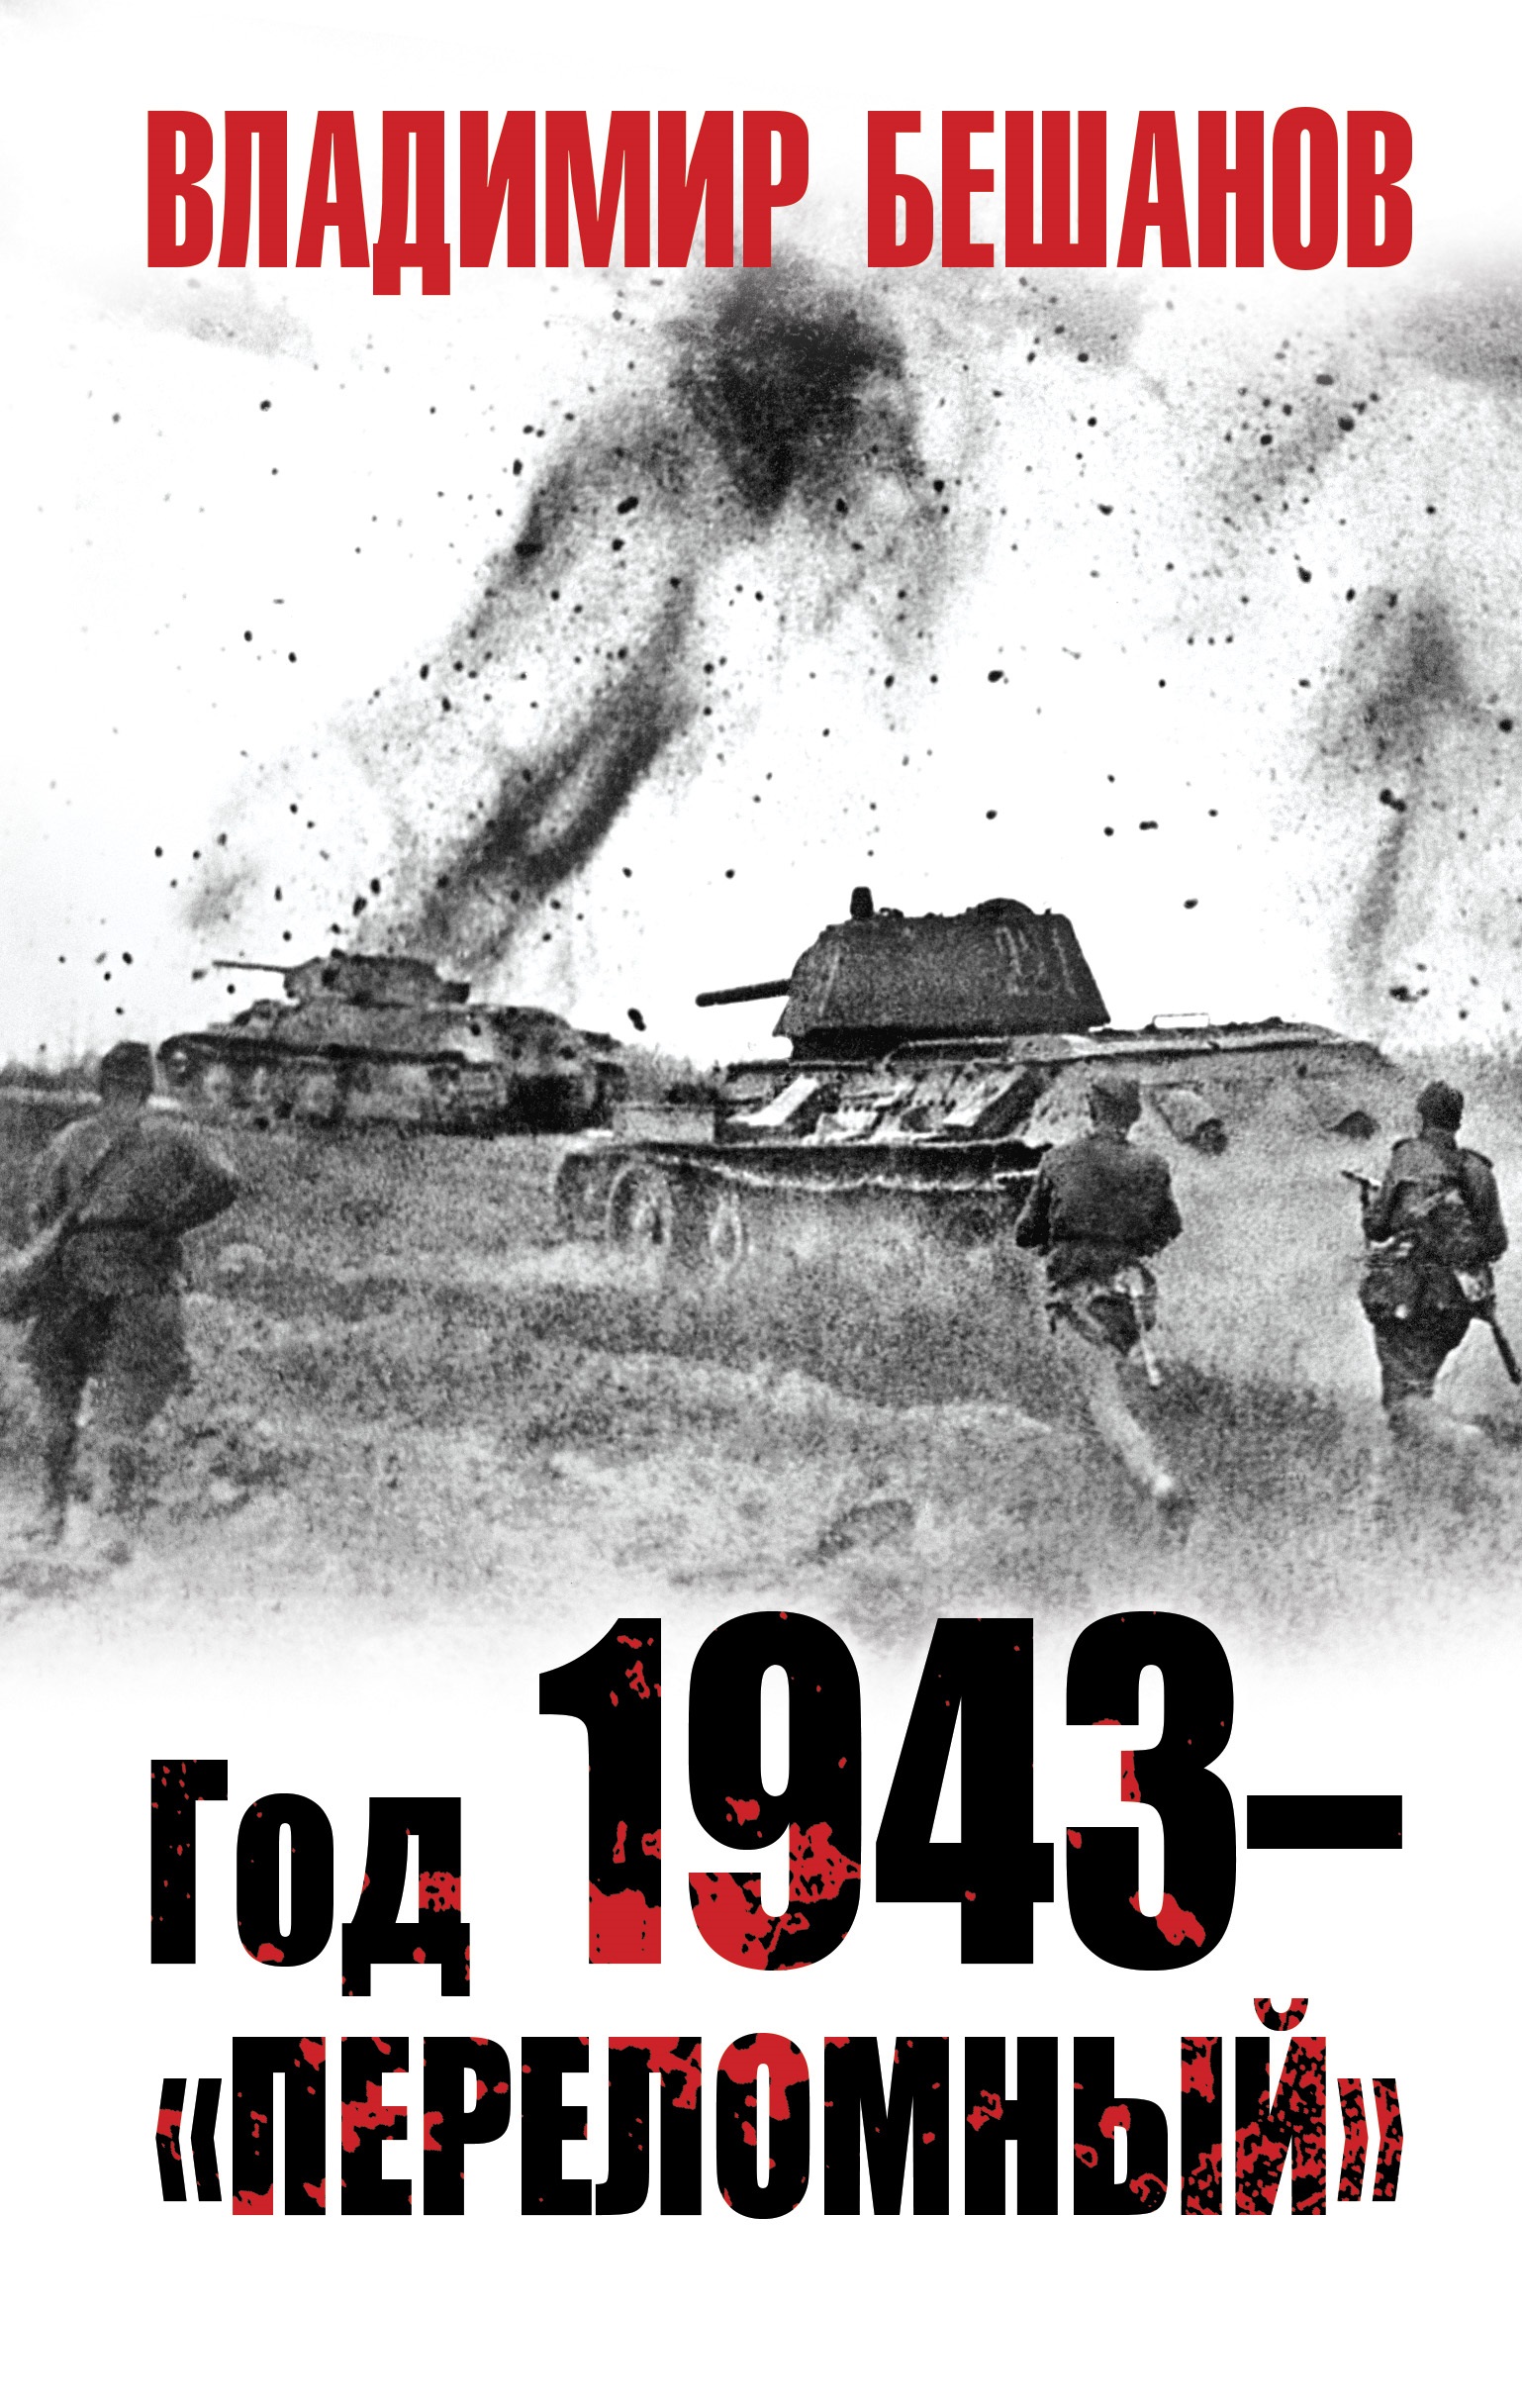  1943    